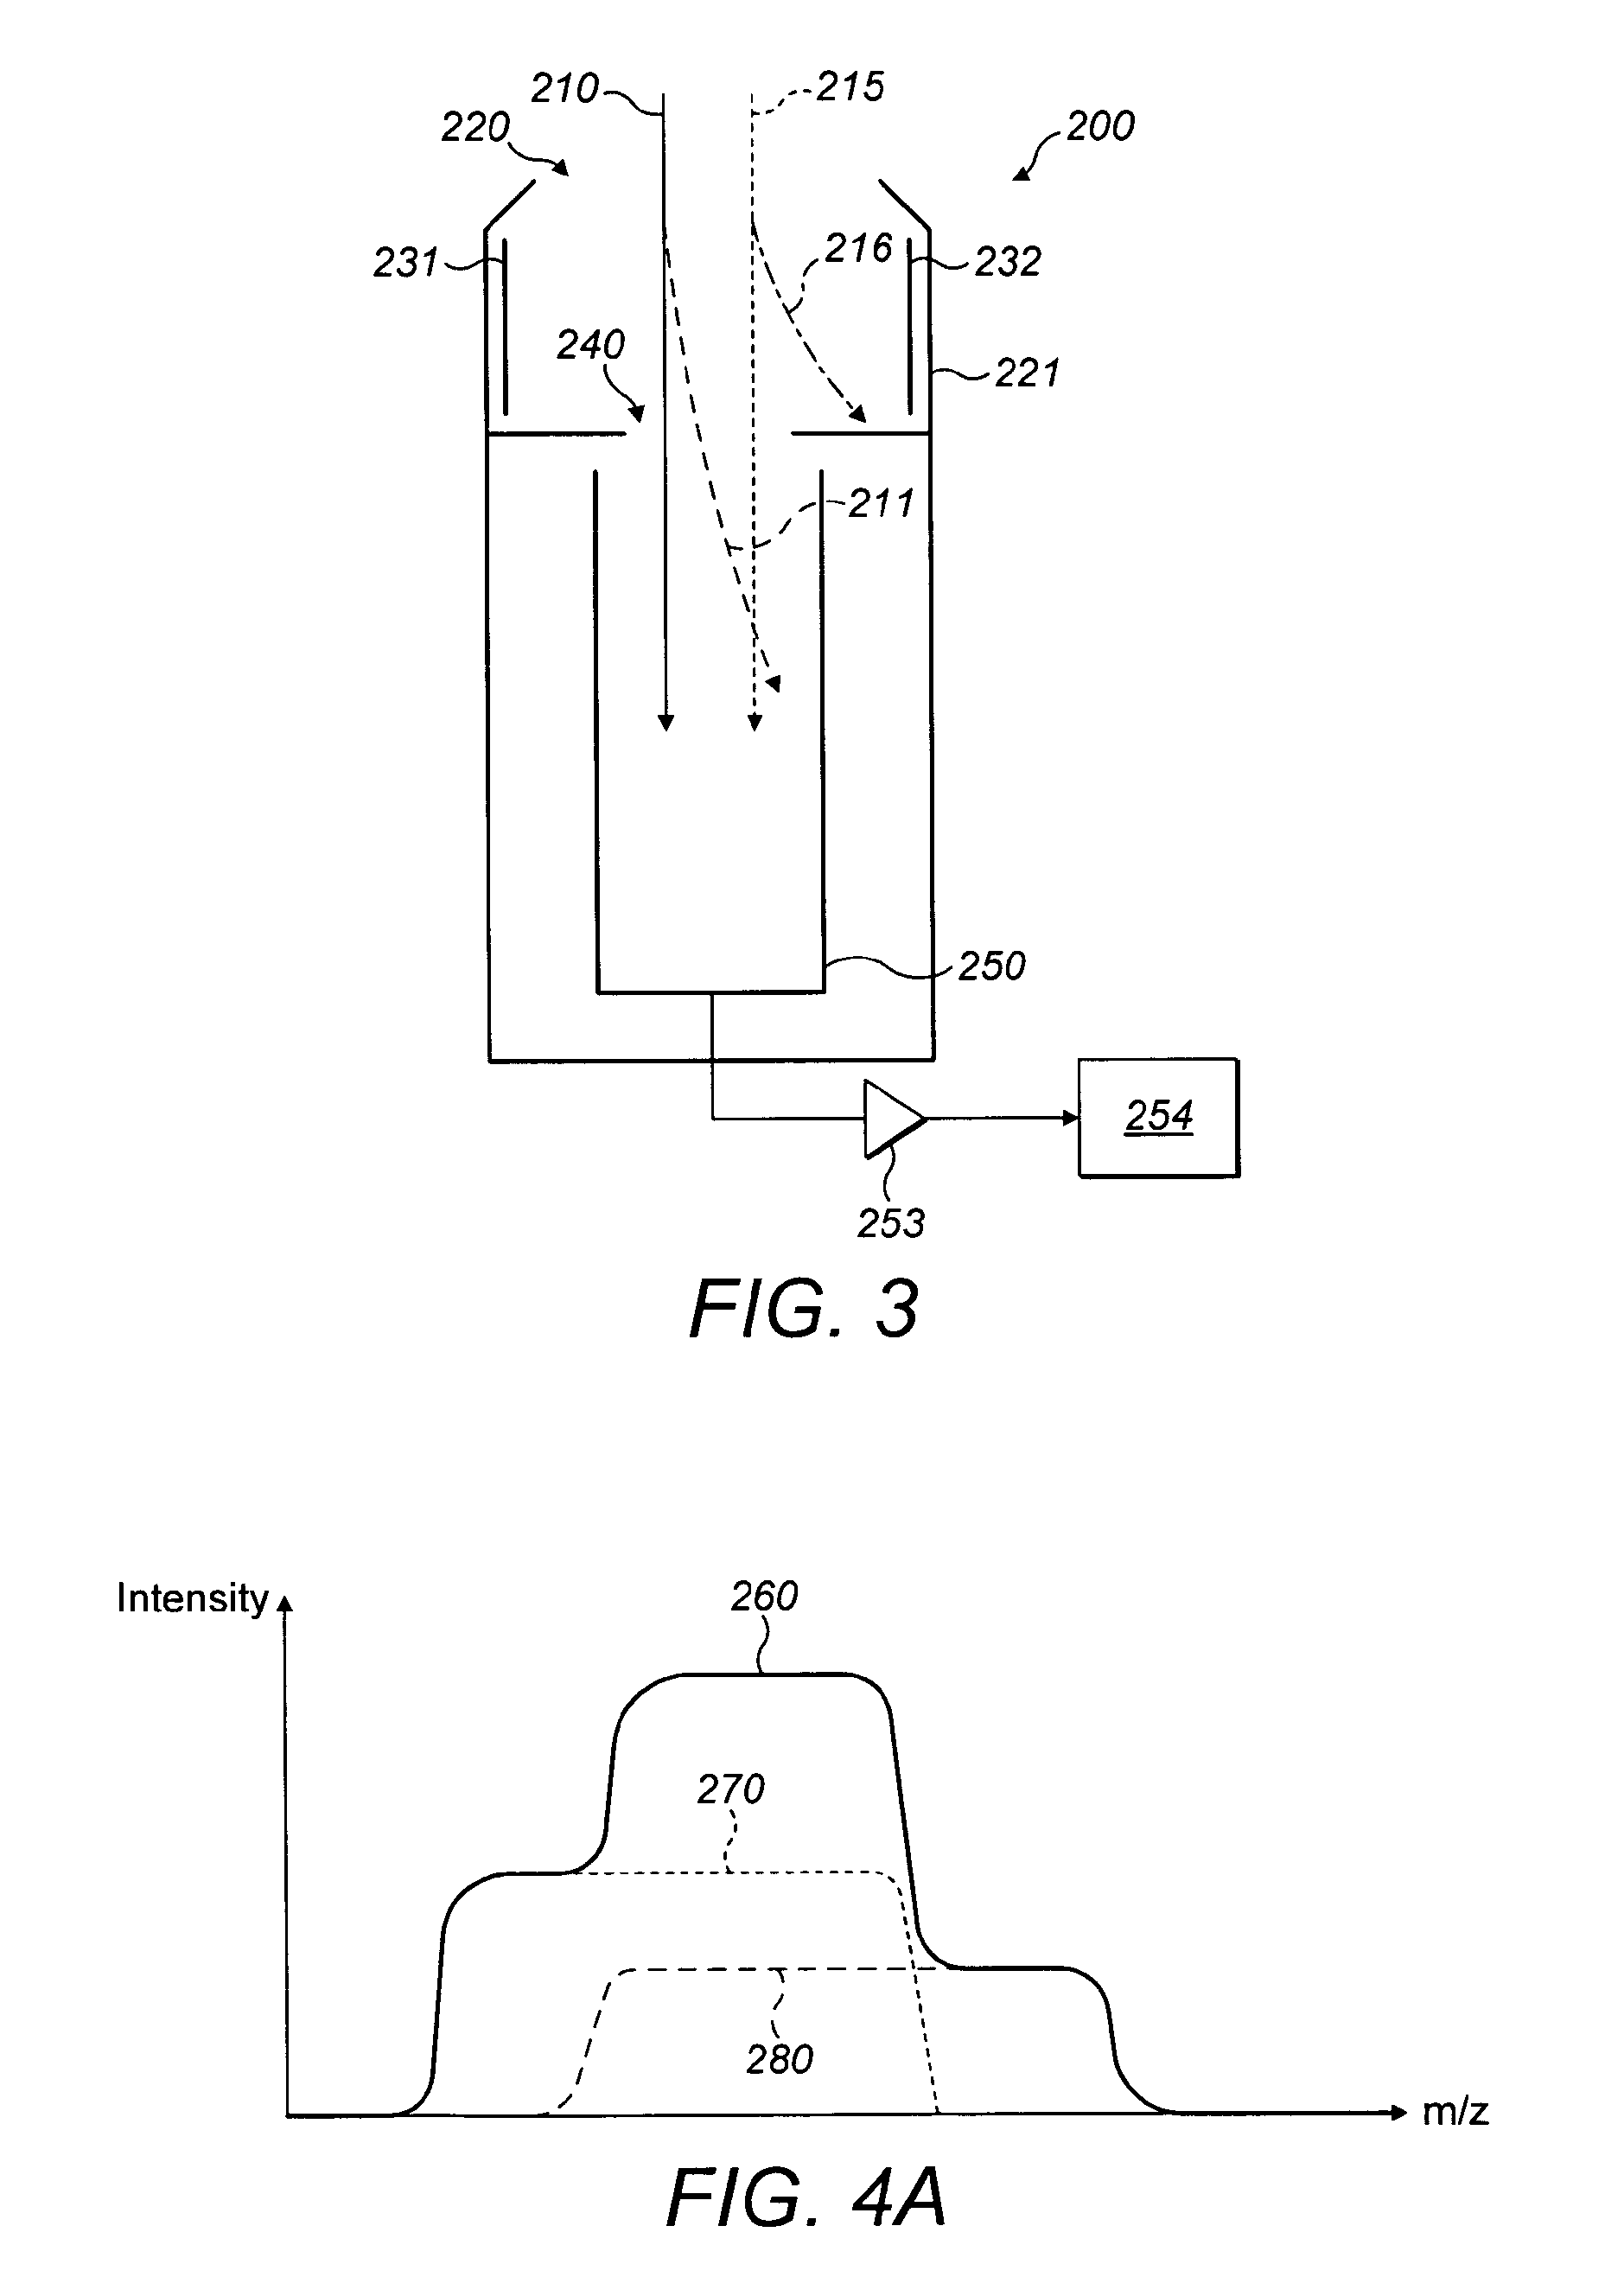 Ion detection arrangement